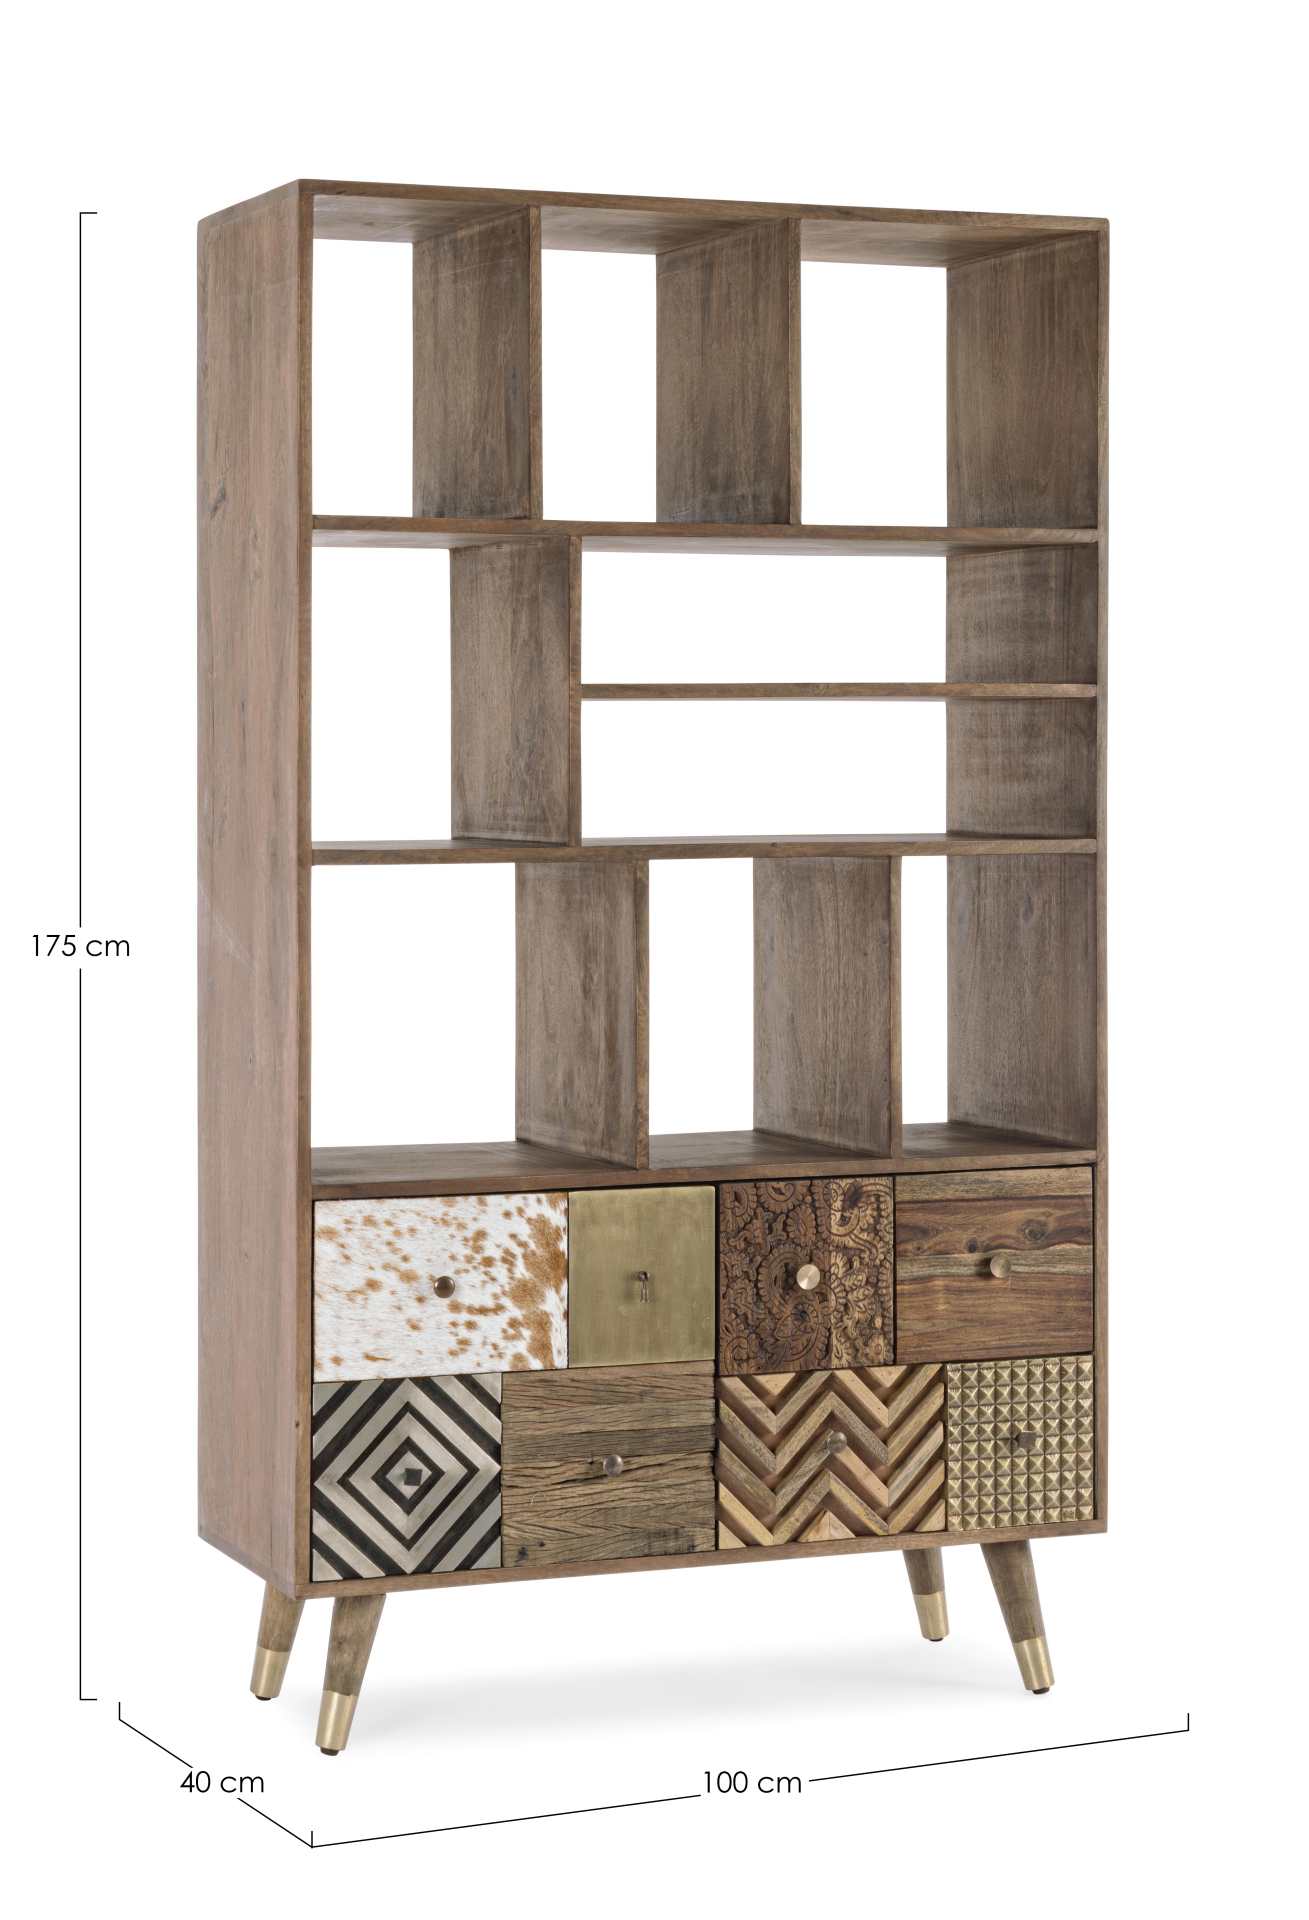 Das Bücherregal Dhaval überzeugt mit seinem klassischen Design. Gefertigt wurde es aus Mangoholz, welches einen natürlichen Farbton besitzt.Das Gestell ist auch aus Mangoholz. Das Bücherregal verfügt über zwei Türen und sechsSchubladen. Die Breite beträgt